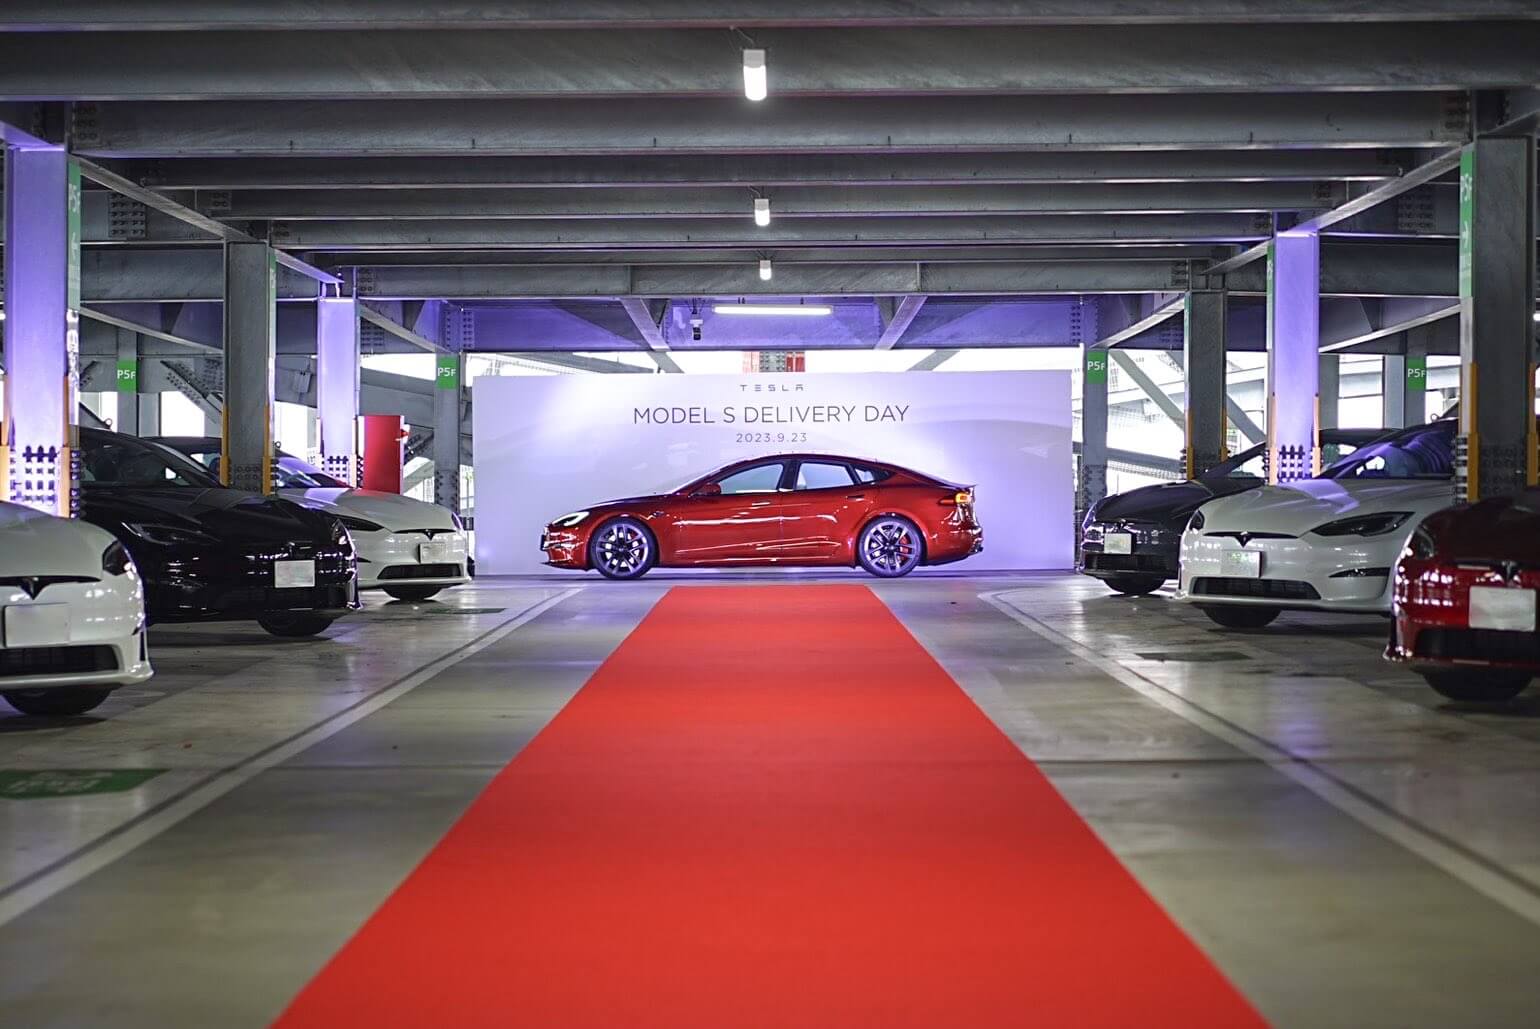 Tesla commence les livraisons de la Model S au Japon avec un événement de livraison